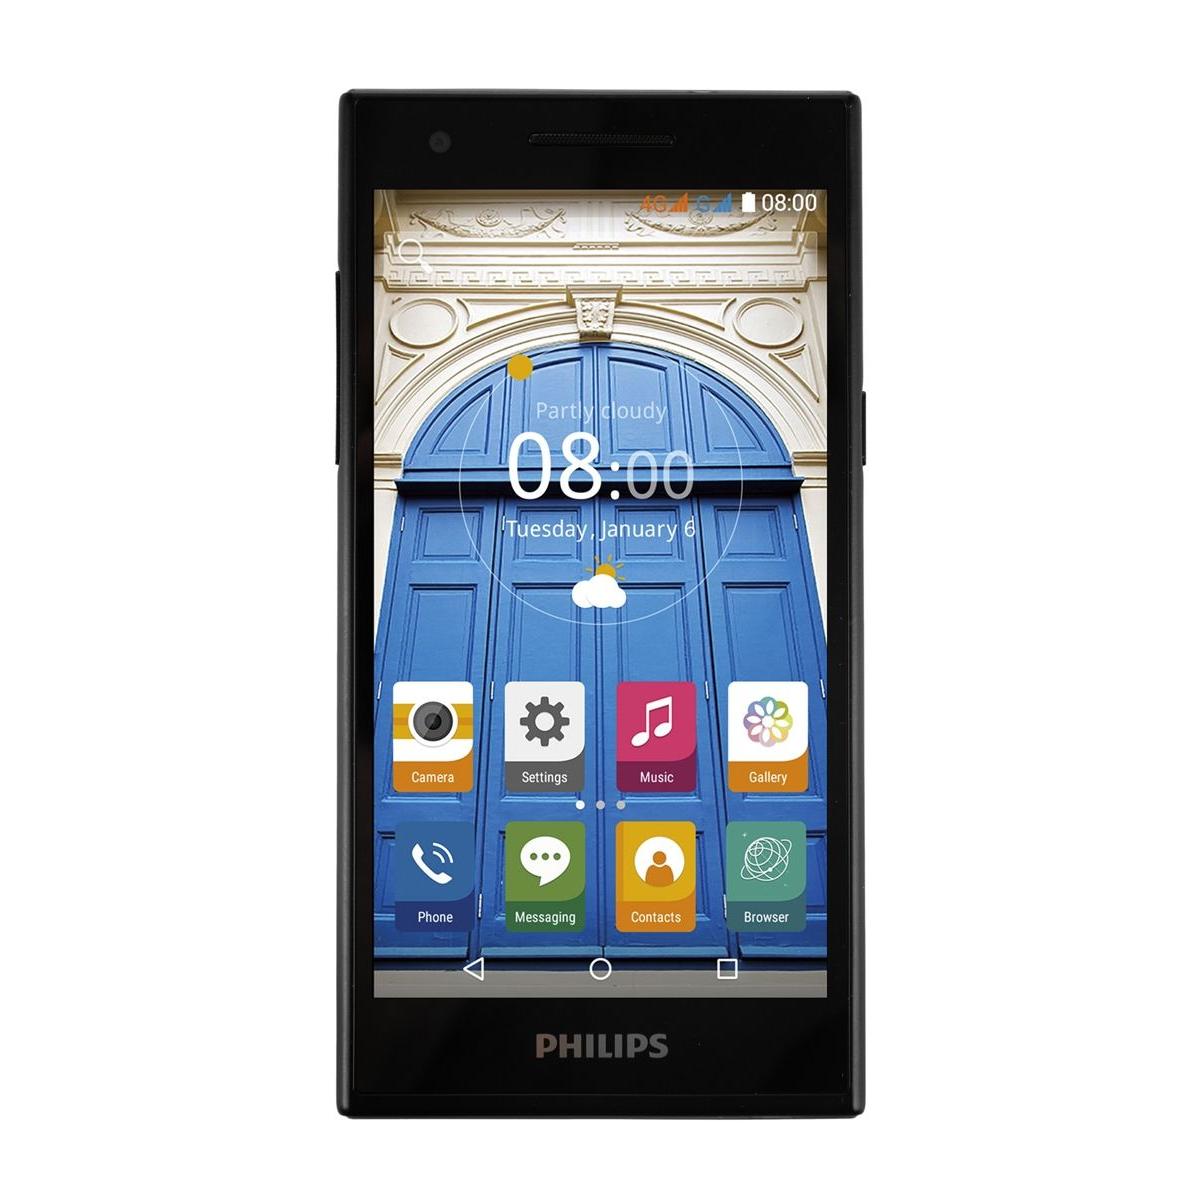 Музыка телефона филипс. Смартфон Philips s396. Смартфон Philips s396 LTE. Смартфон Philips s396, черный. Philips s396 Powered by Android.